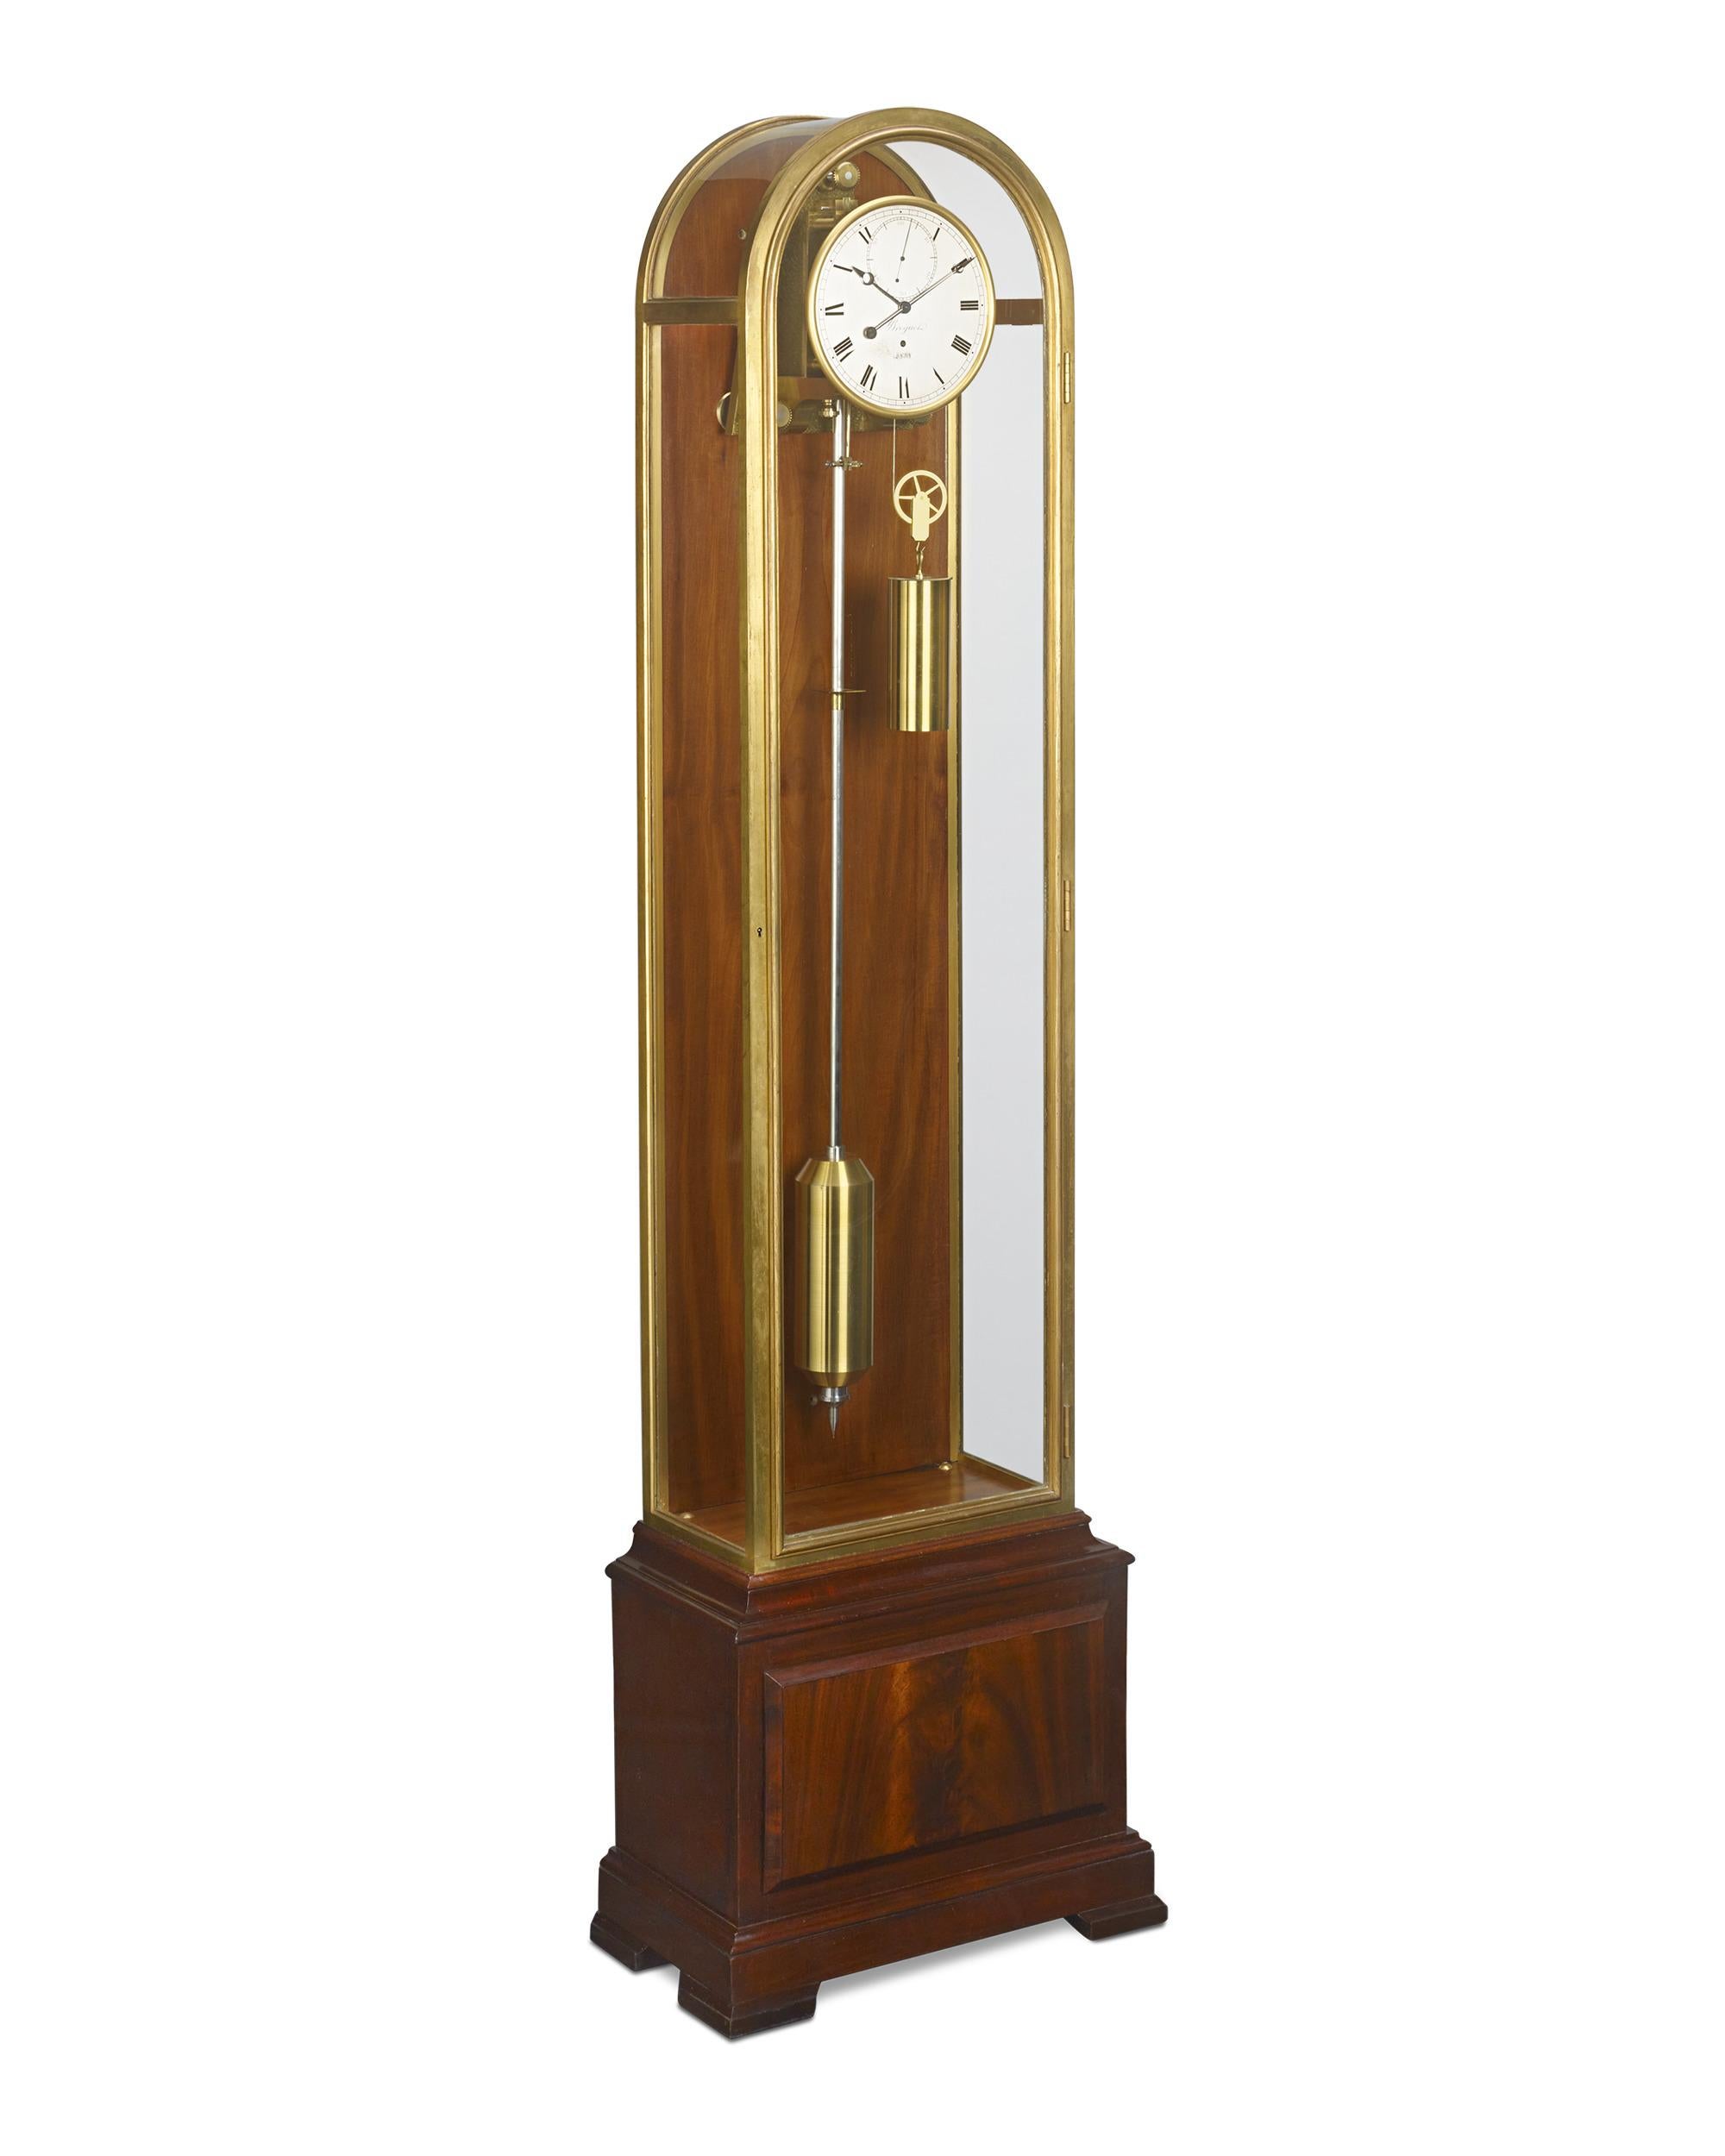 Achevée le 31 décembre 1931, cette horloge Breguet en acajou et laiton à régulateur mensuel de sol est un parfait emblème de l'Art déco et de l'excellence mécanique de Breguet durant l'importante période de l'entre-deux-guerres. Dotée des